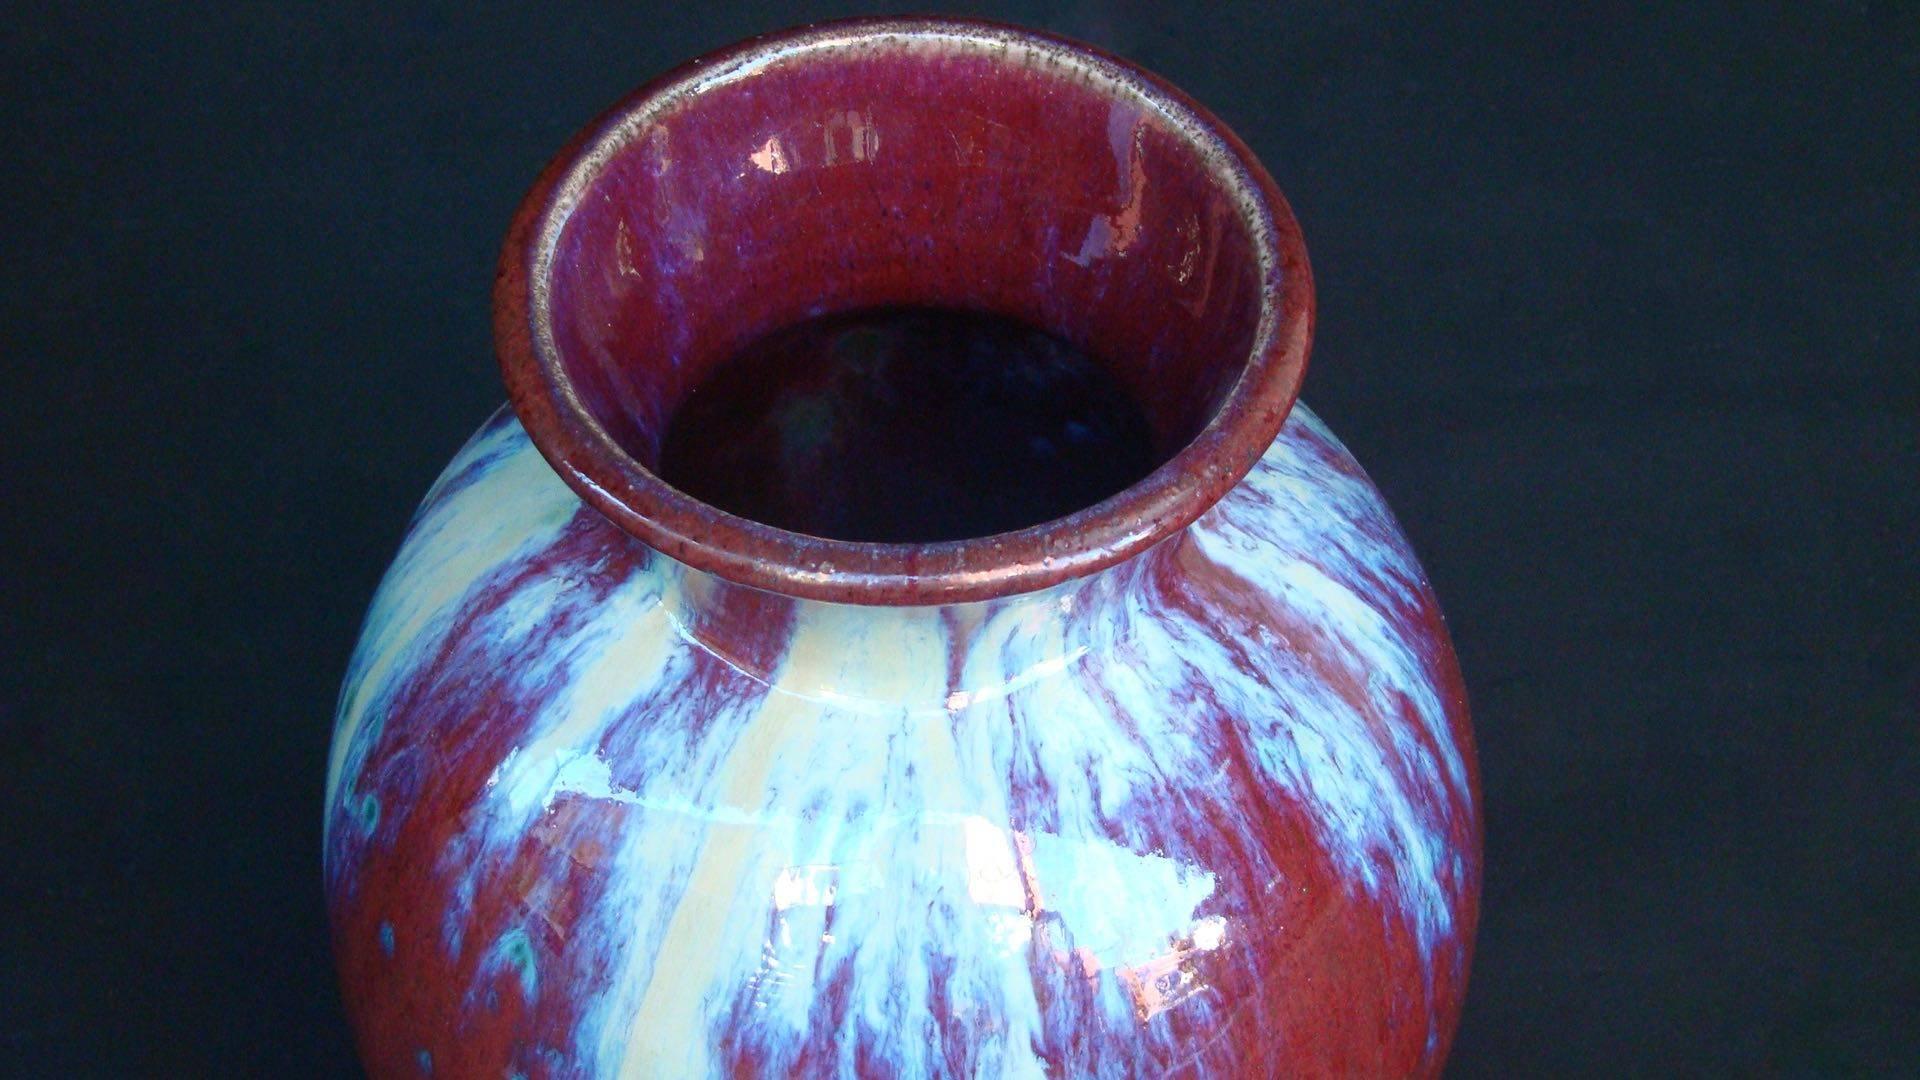 Handsome red glazed ceramic vase by Frédéric Kiefer, circa 1930.

Signed 